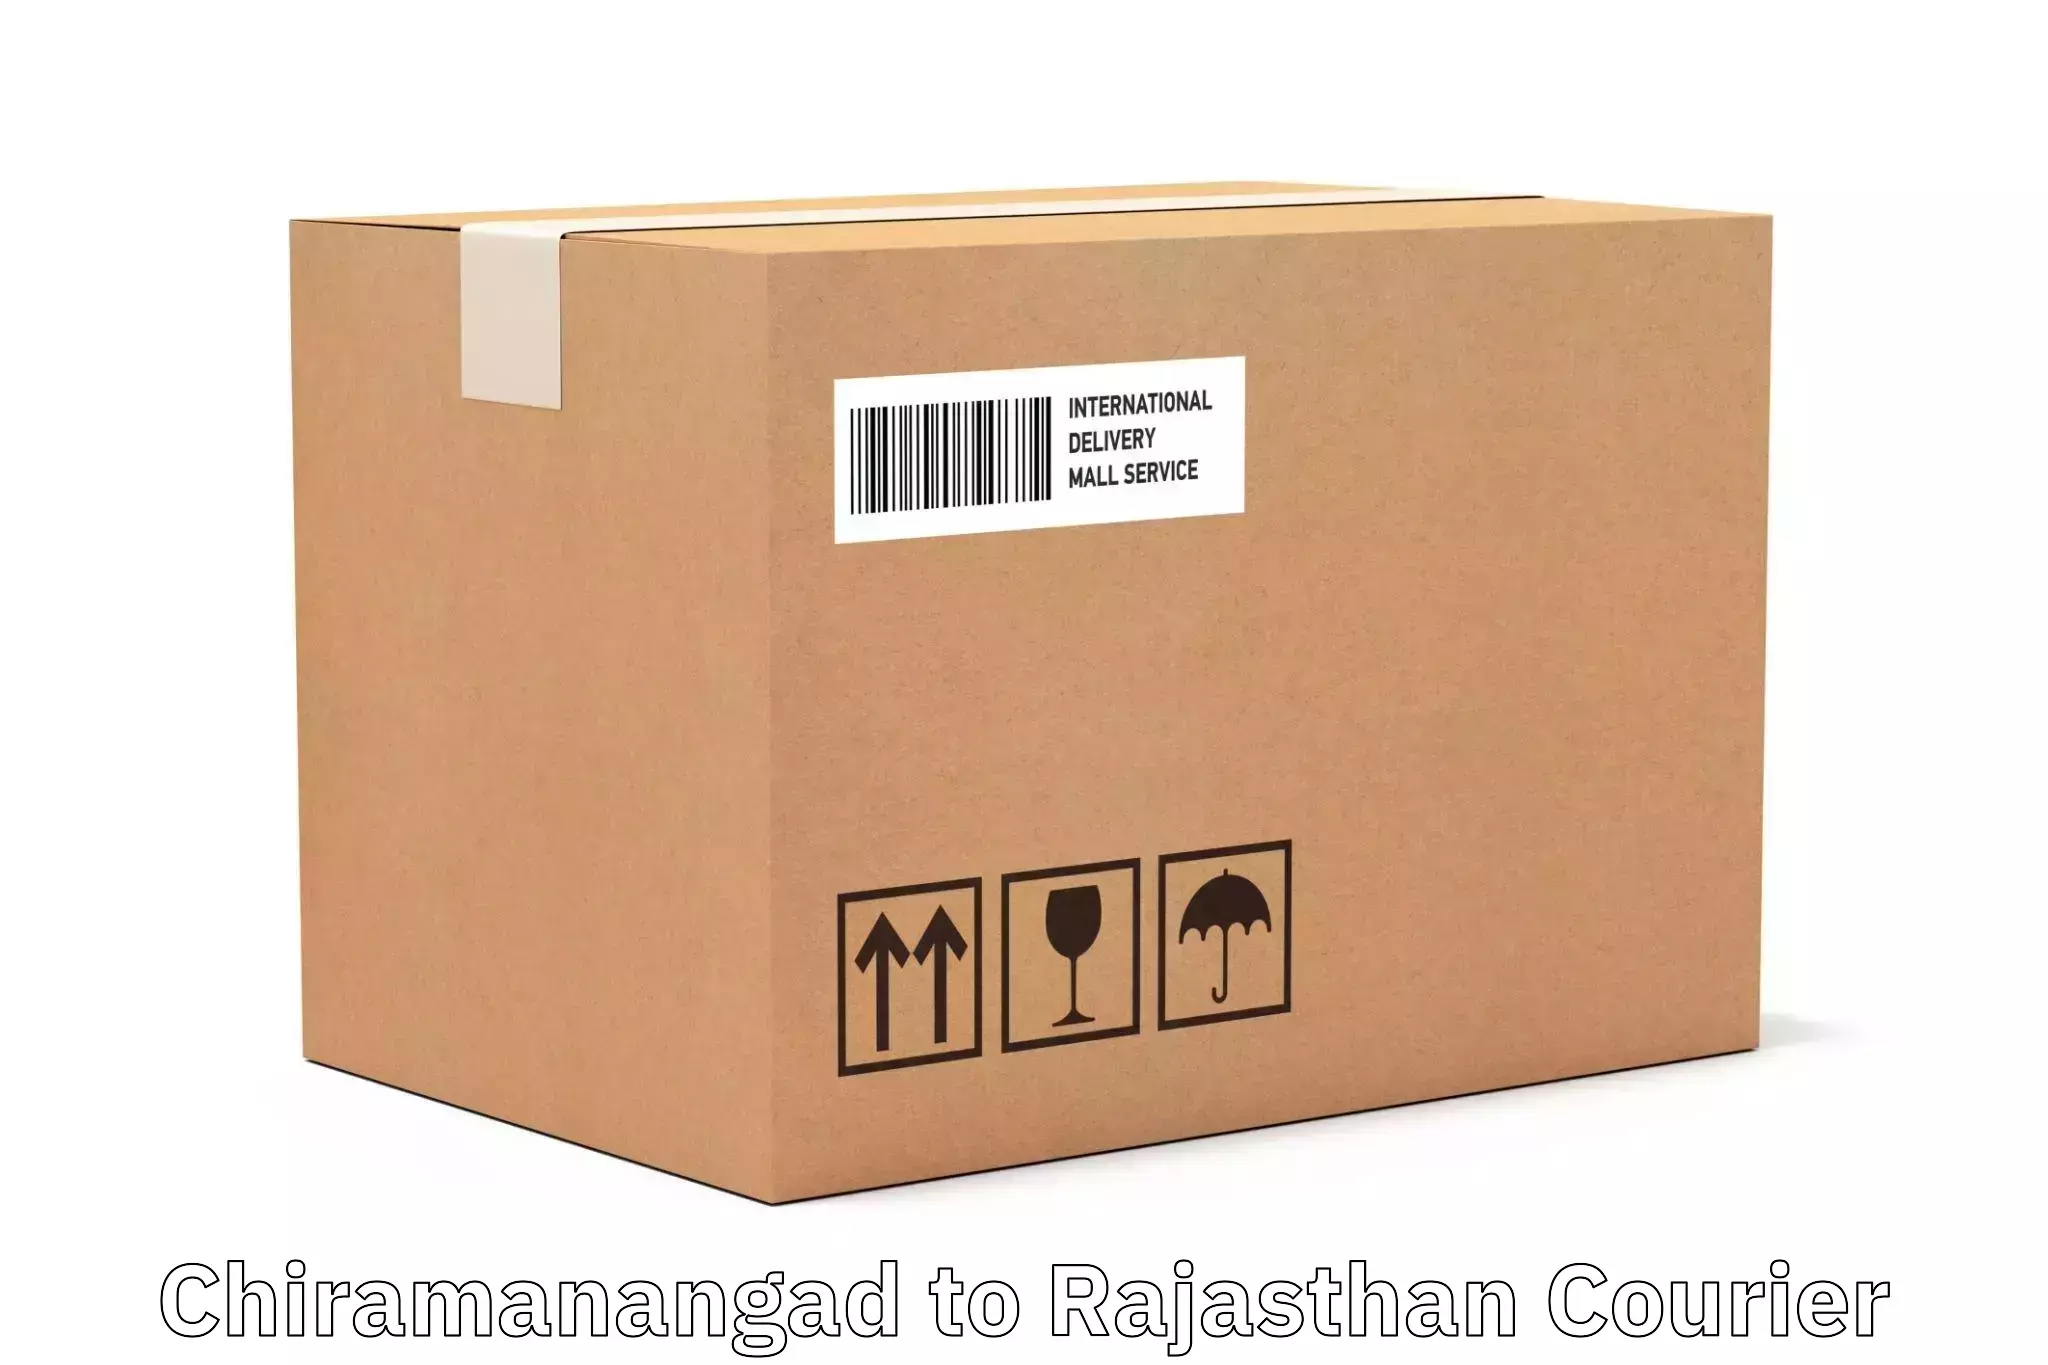 Local delivery service Chiramanangad to Suratgarh